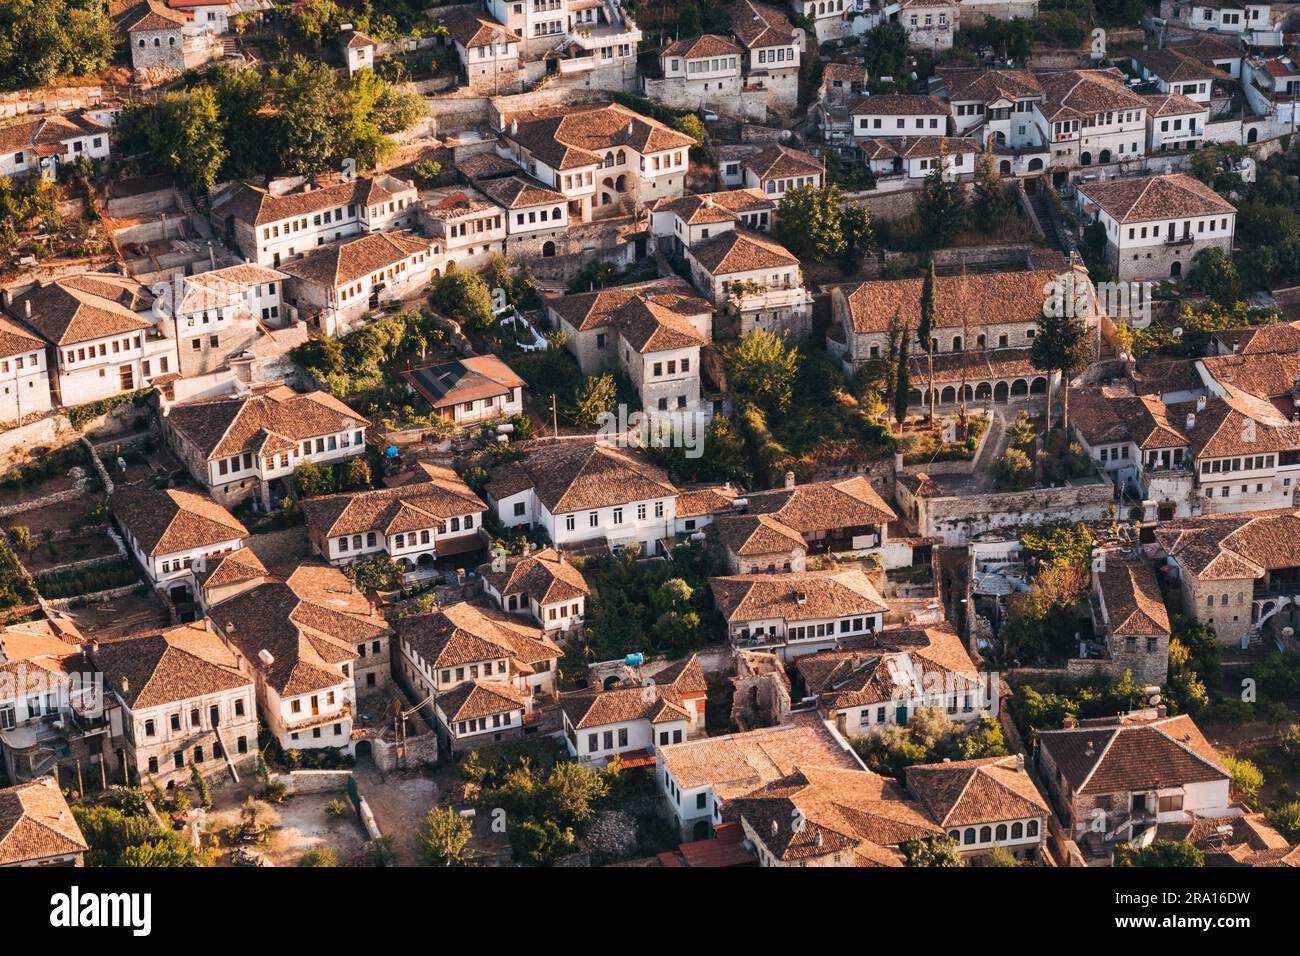 Regardant vers le bas sur les toits de tuiles et les murs blancs qui composent le quartier pittoresque de Gorica à Berat, Albanie Banque D'Images